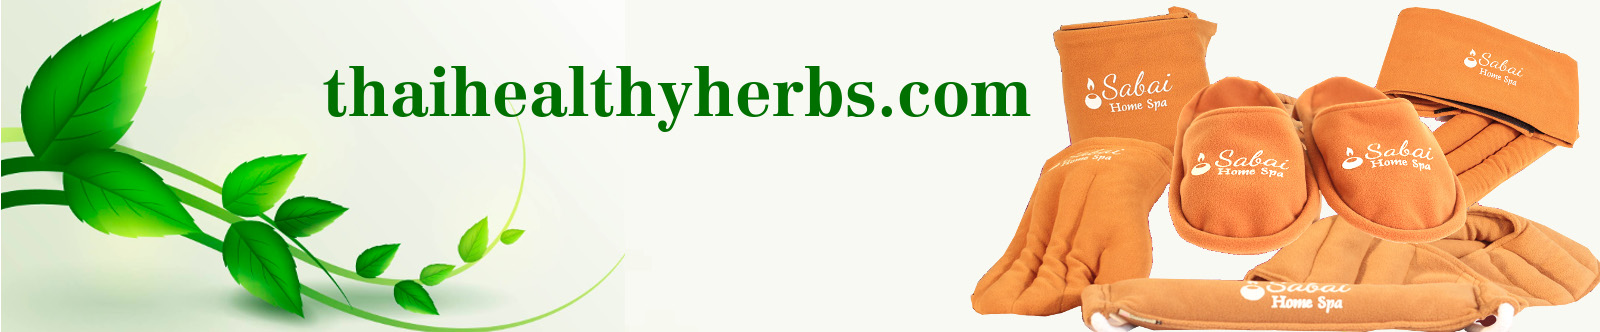 thaihealthyherbs.com Thai Herbal Heat Bag